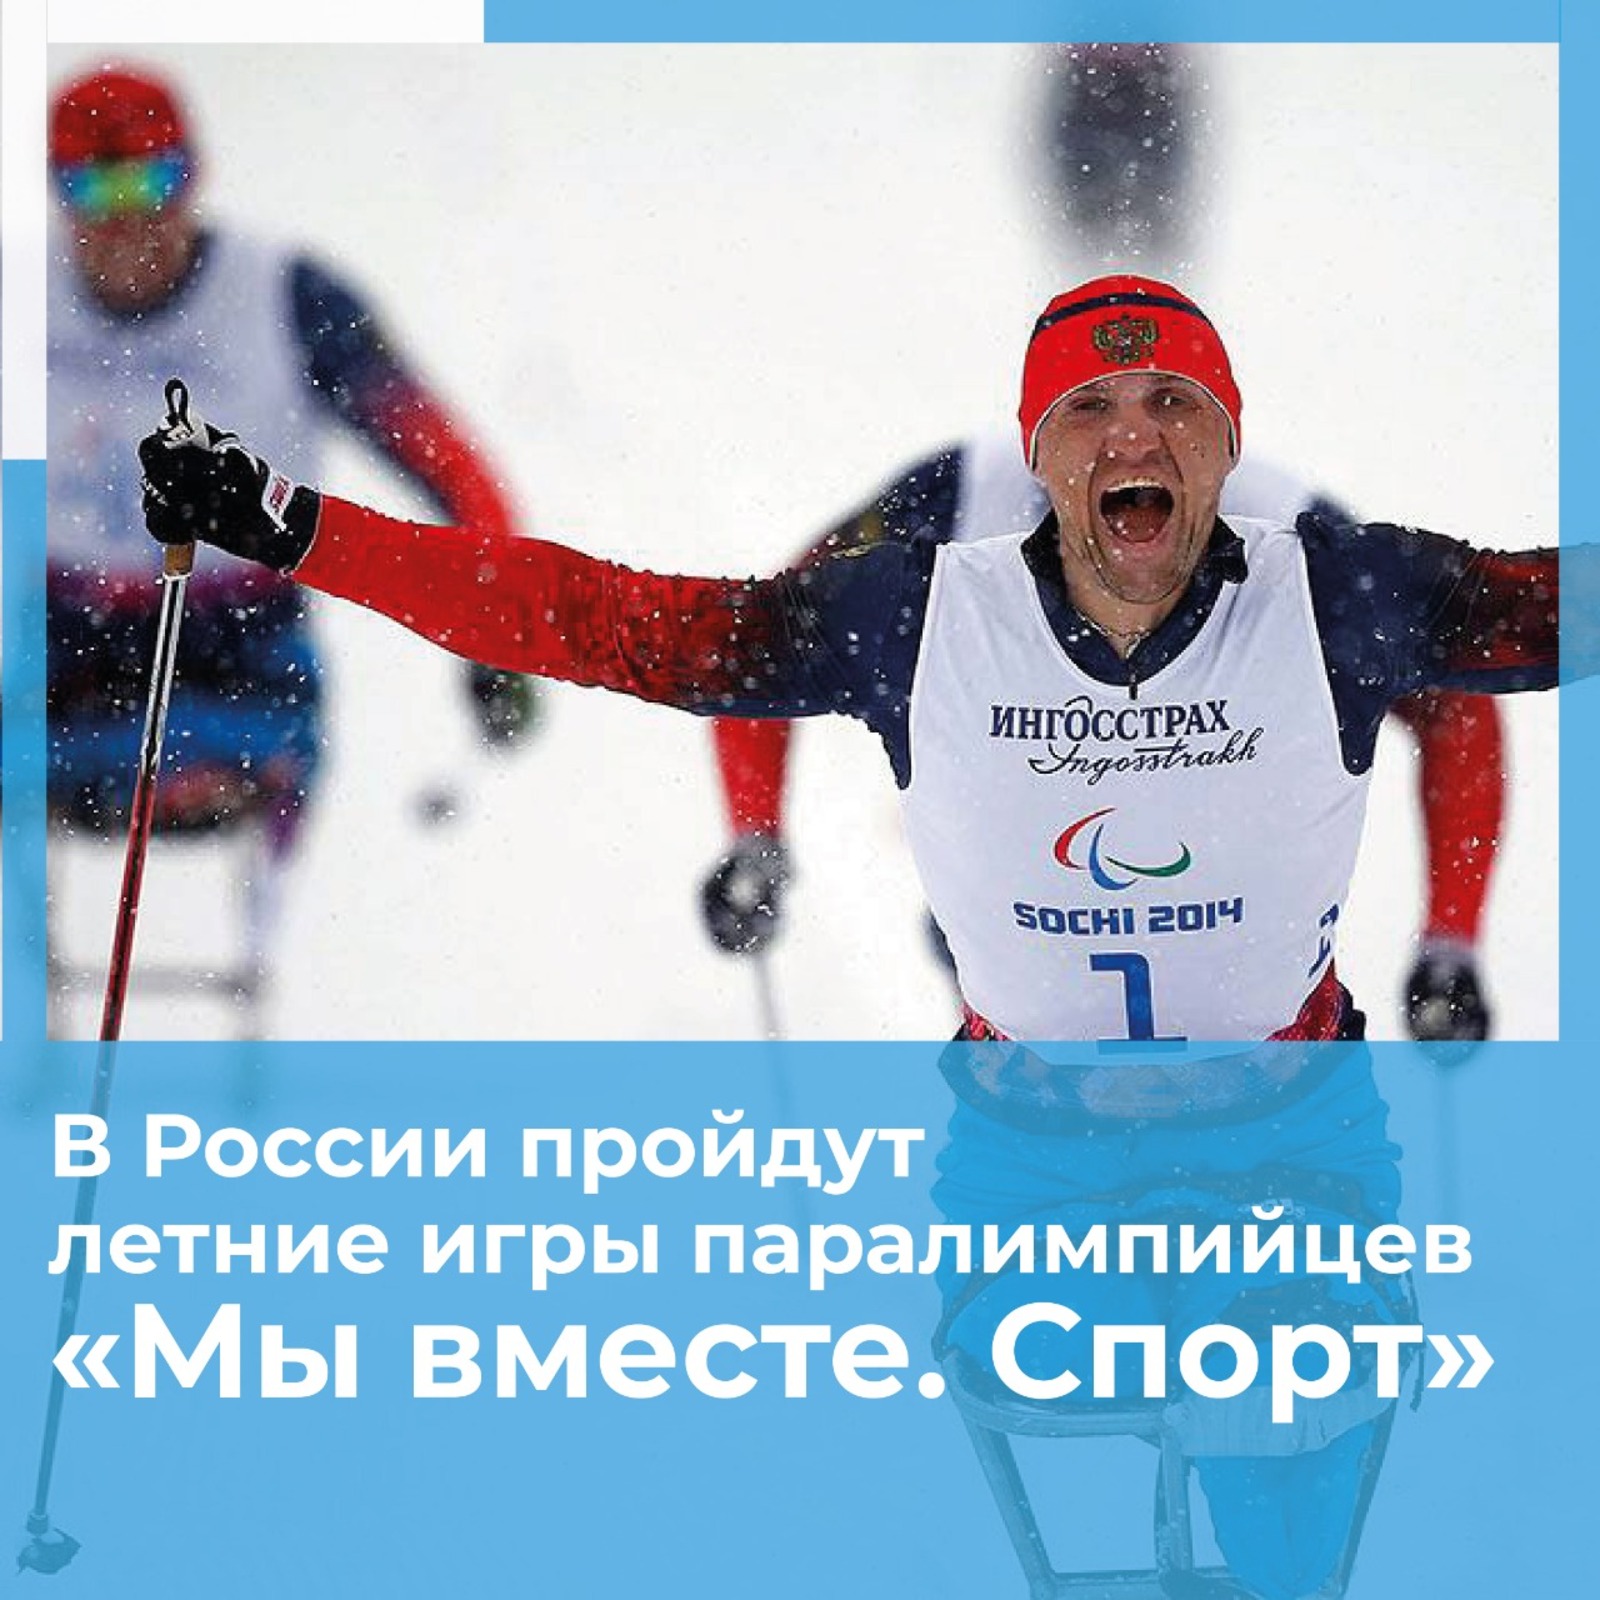 Российские паралимпийцы примут участие в летних играх «Мы вместе. Спорт».